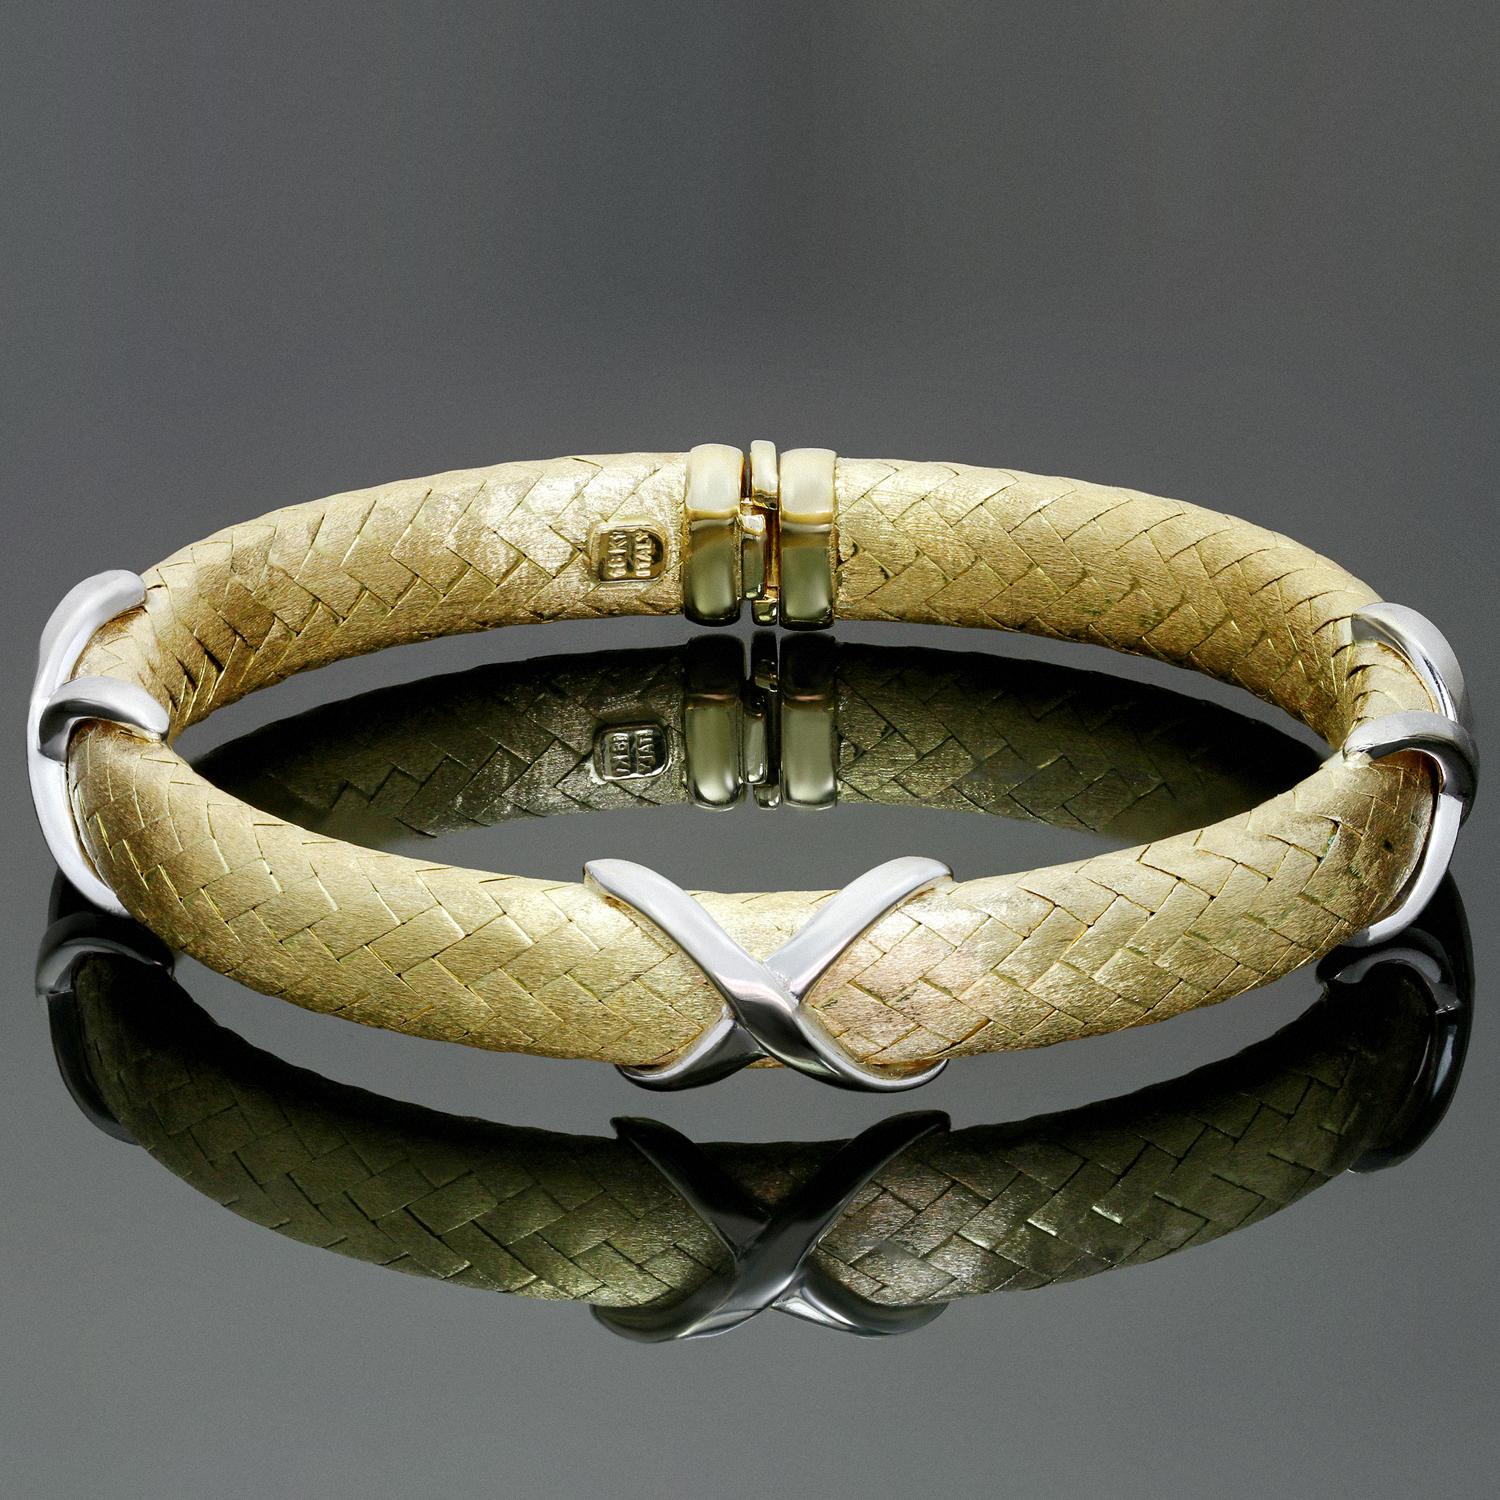 Dieses klassische, flexible Armband ist aus strukturiertem 18-karätigem Gelbgold gefertigt und mit X-Motiven aus poliertem Weißgold akzentuiert. Herstellermarke ZRW. Hergestellt in Italien in den 1980er Jahren. Abmessungen: 0,51